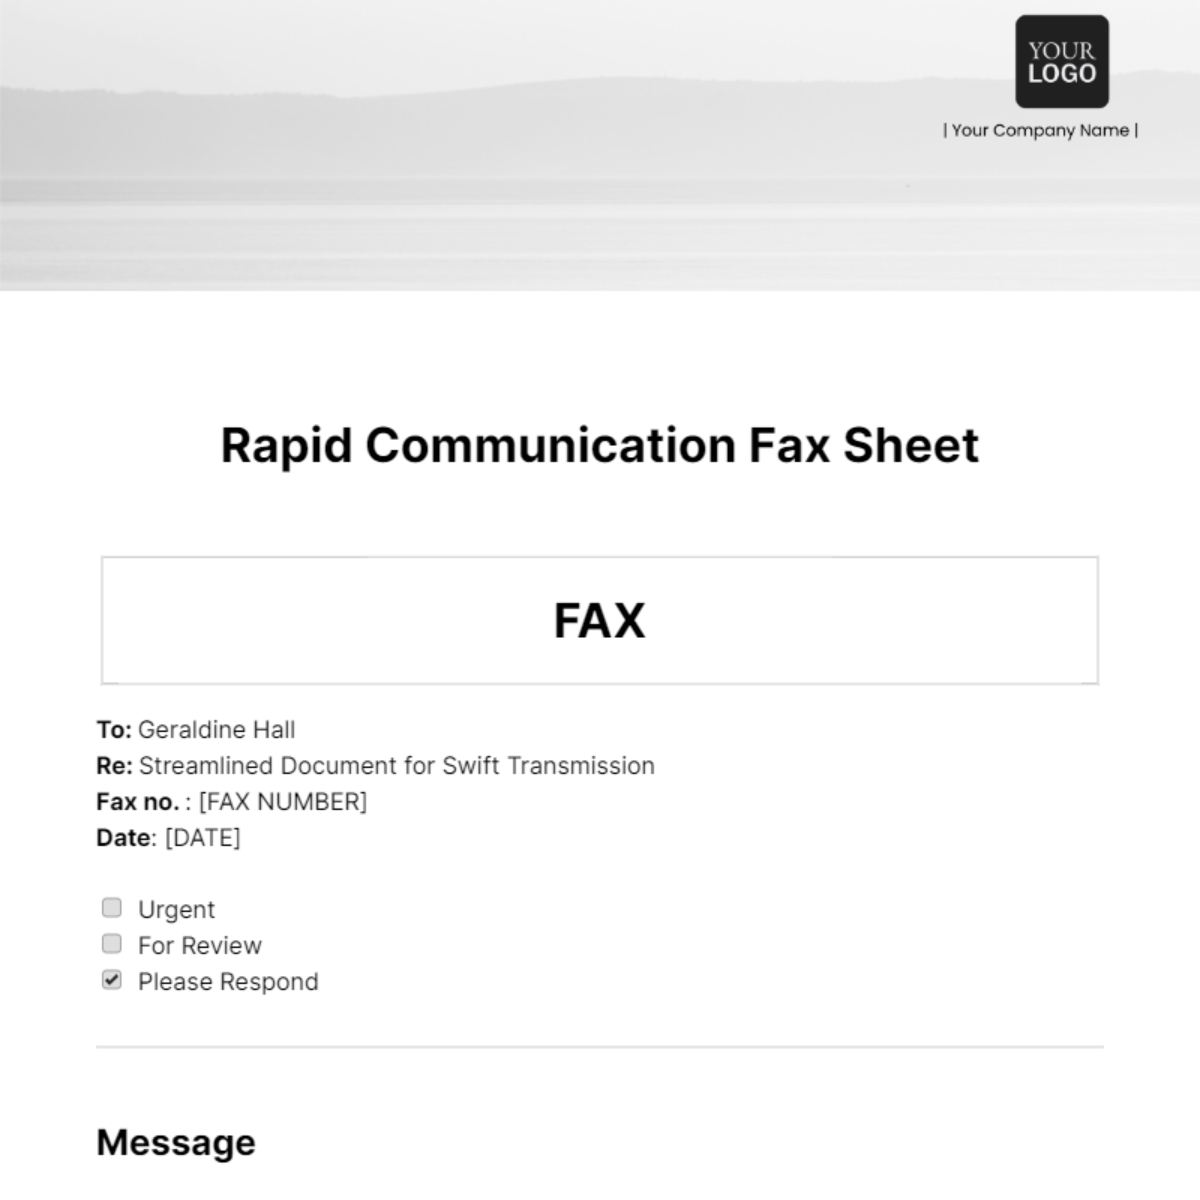 Rapid Communication Fax Sheet Template